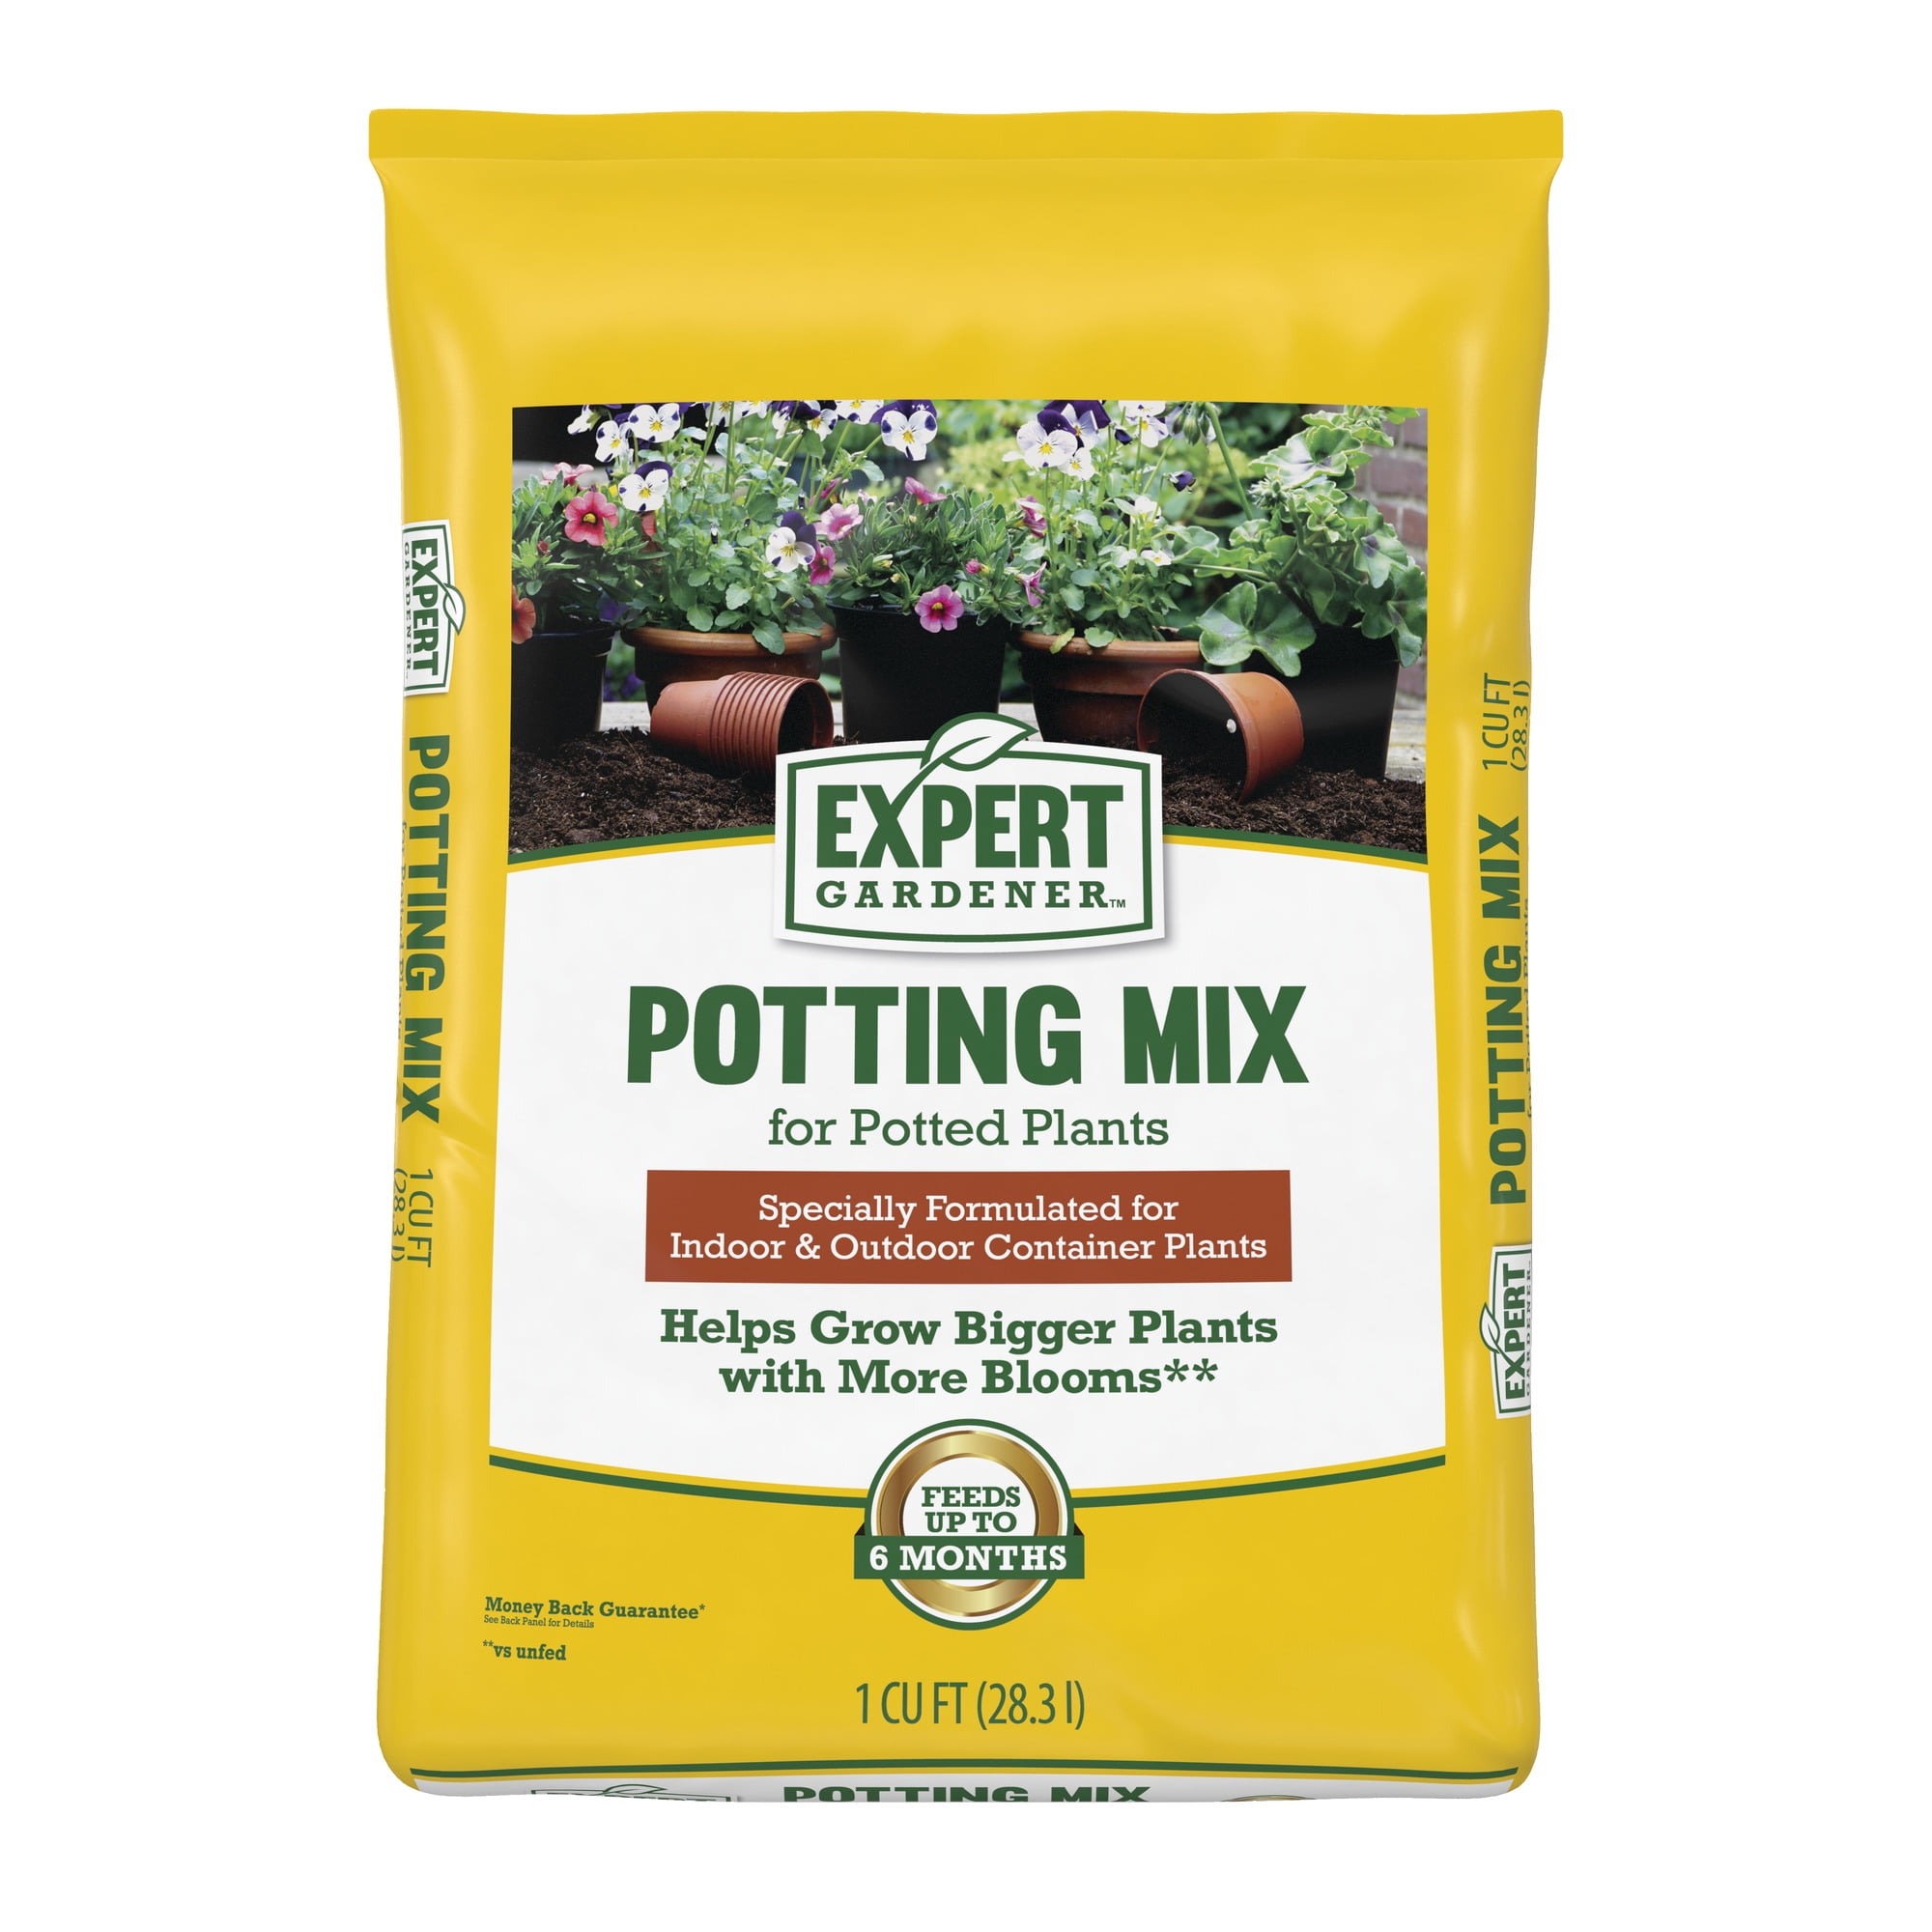 Expert Gardener Potting Mix for Indoor & Outdoor Potted Plants, 1 Cu. ft.